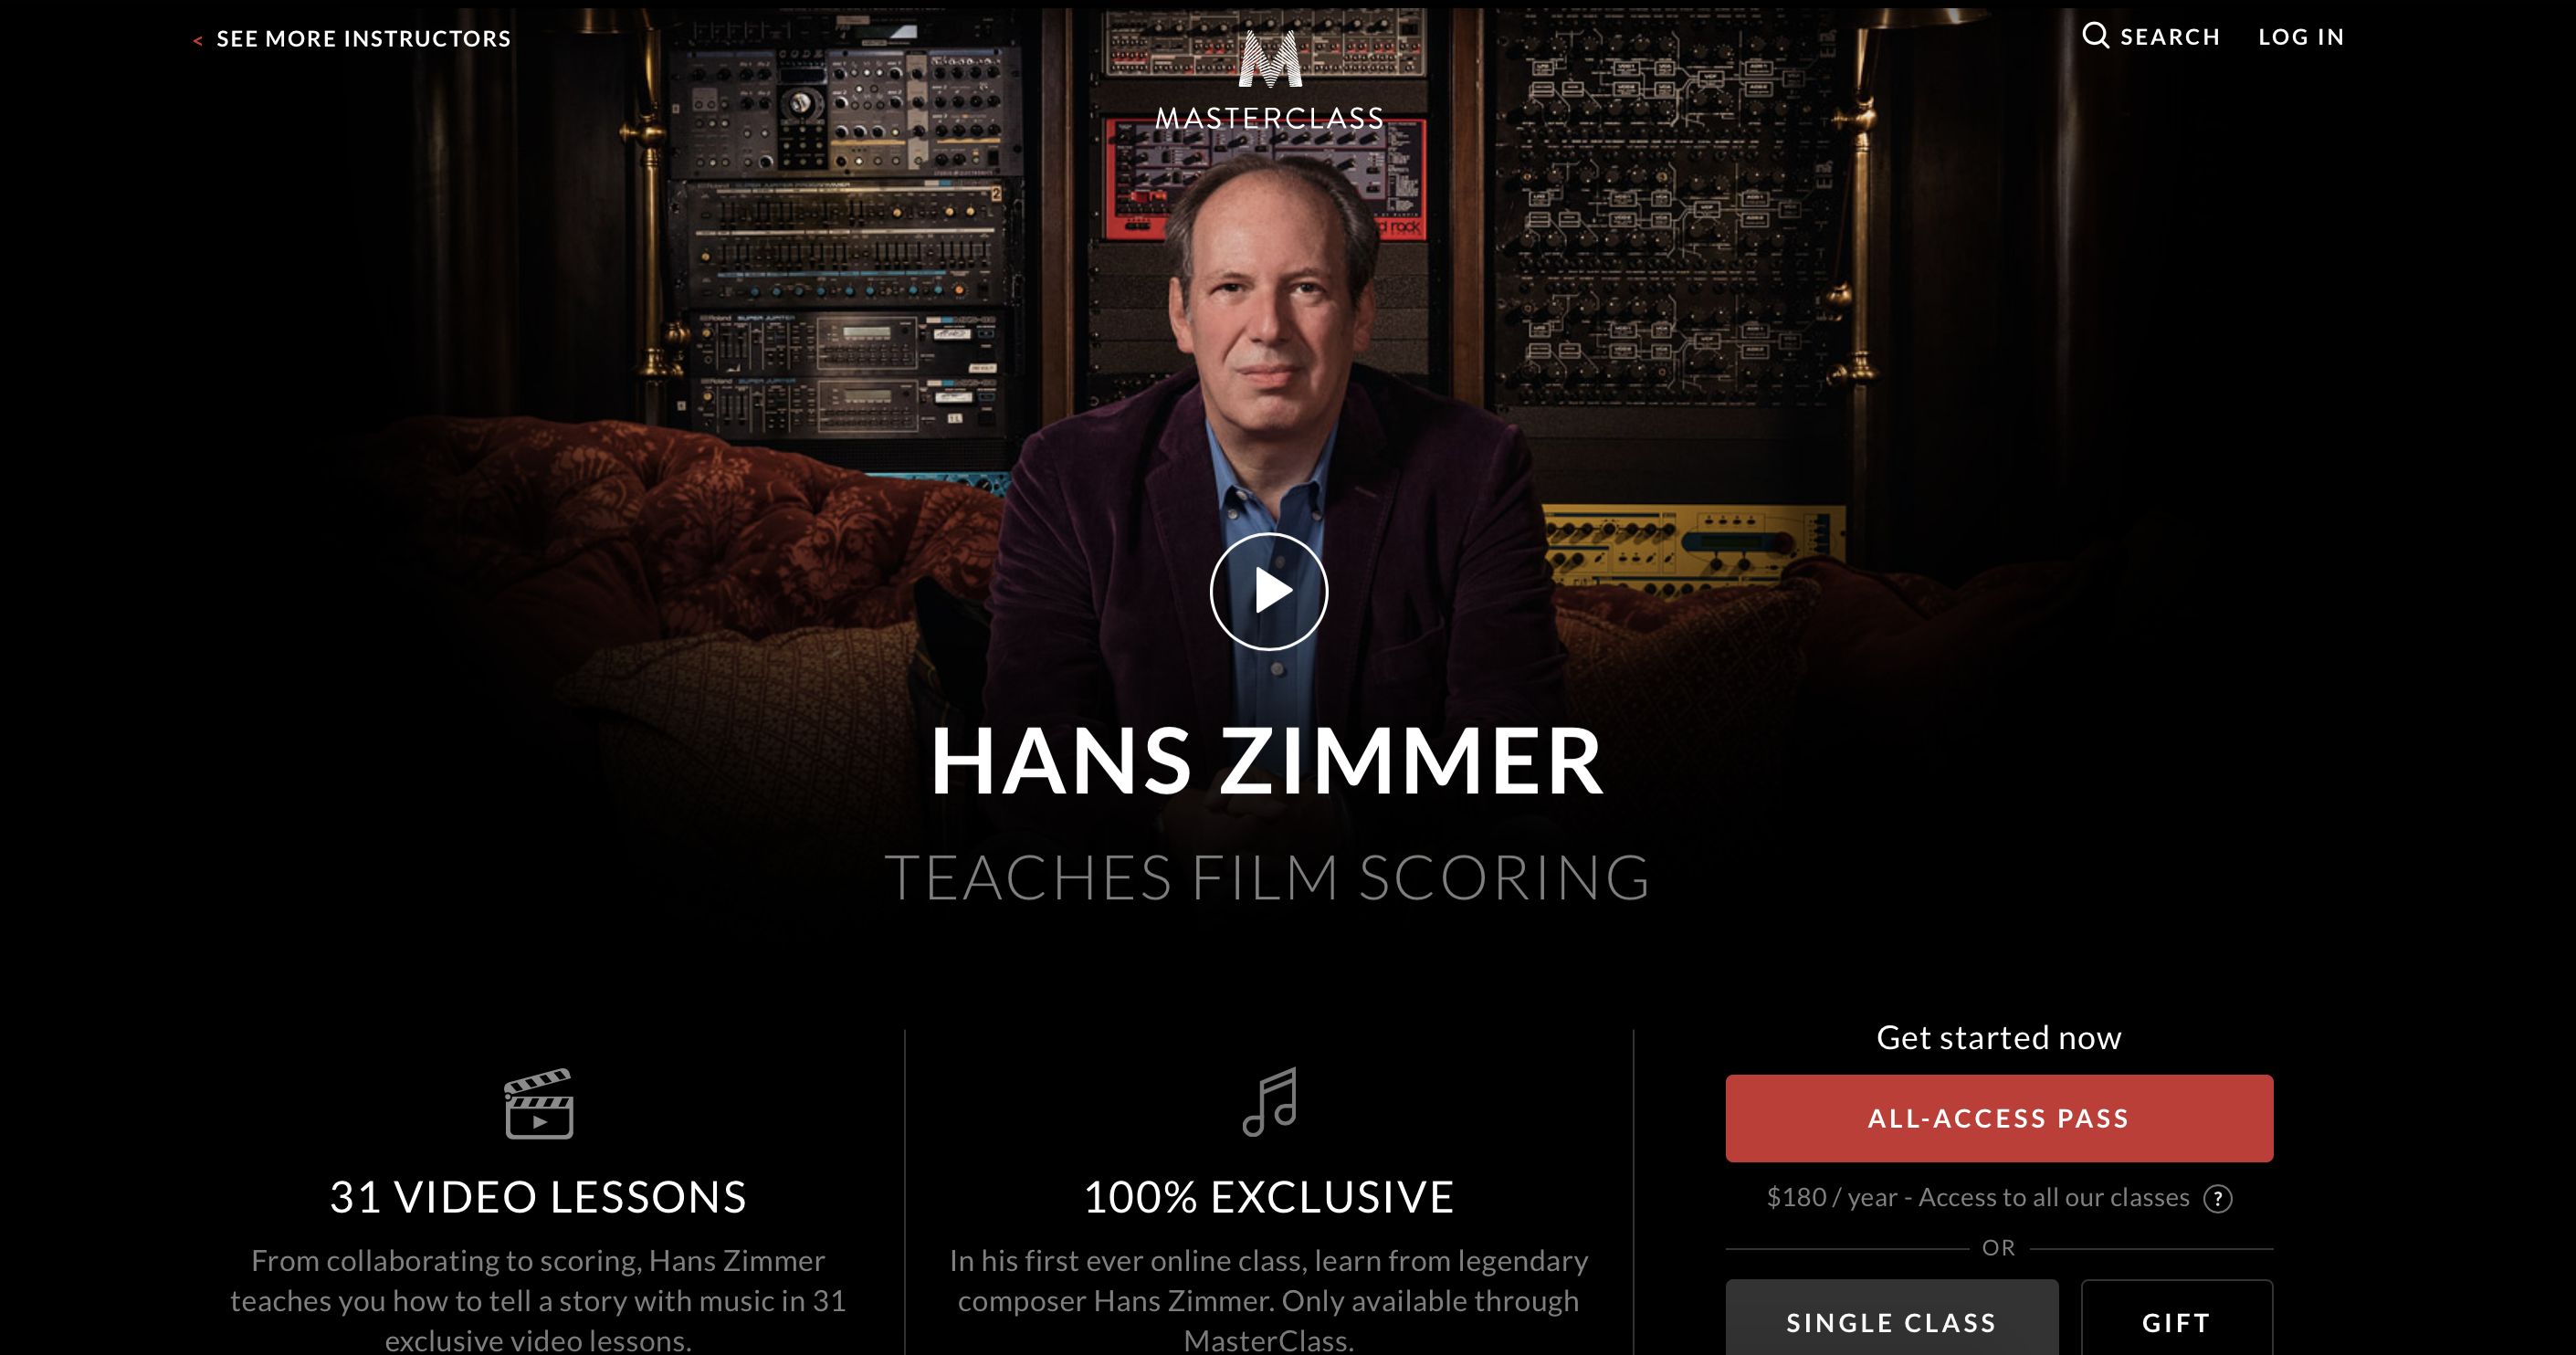 hans zimmer teaches film scoring masterlcass review